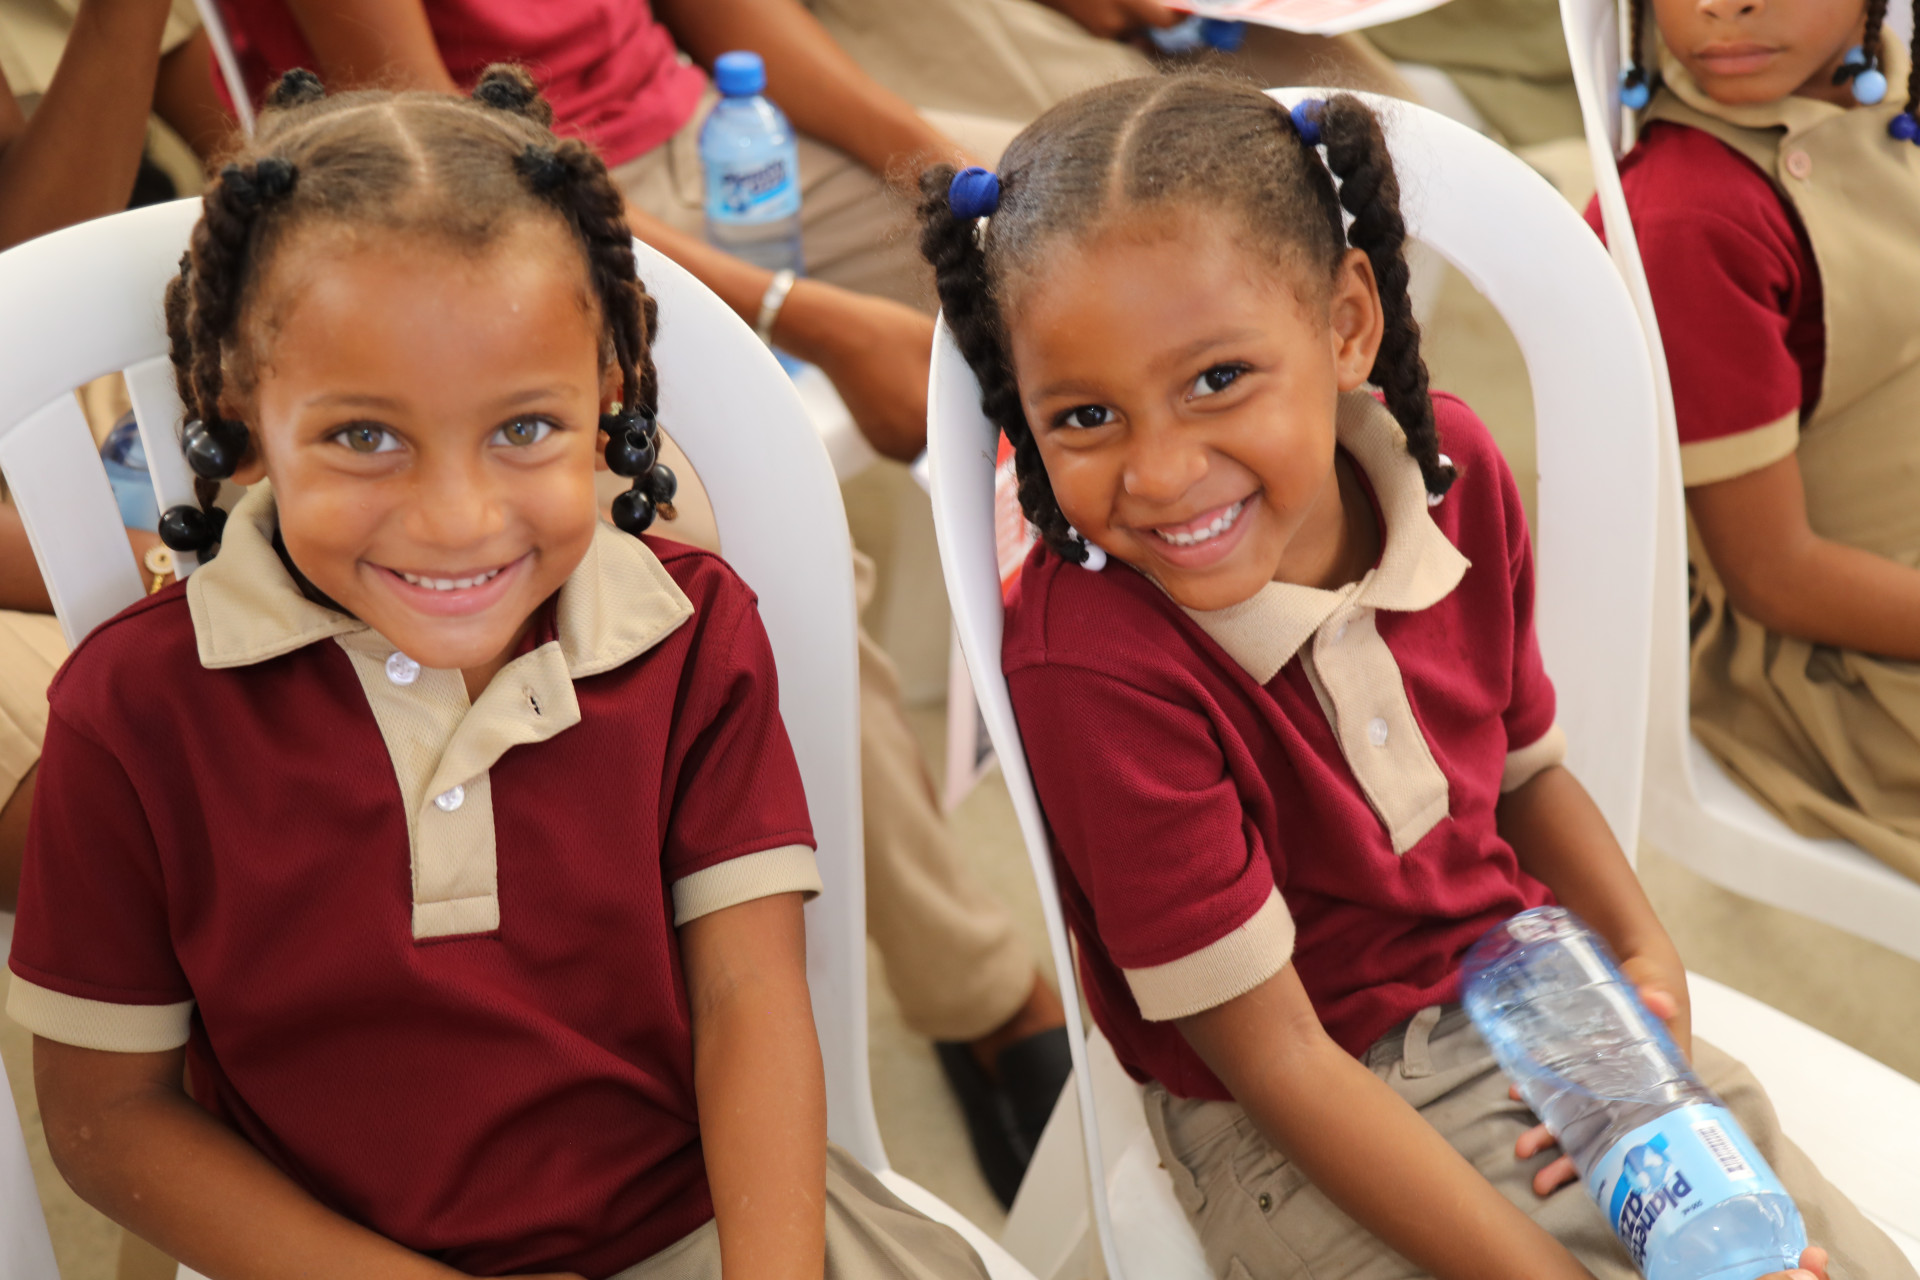 REPÚBLICA DOMINICANA: Presidente Danilo Medina envía cariñoso saludo de felicitación a niños, adolescentes y adultos de planteles educativos y académicos